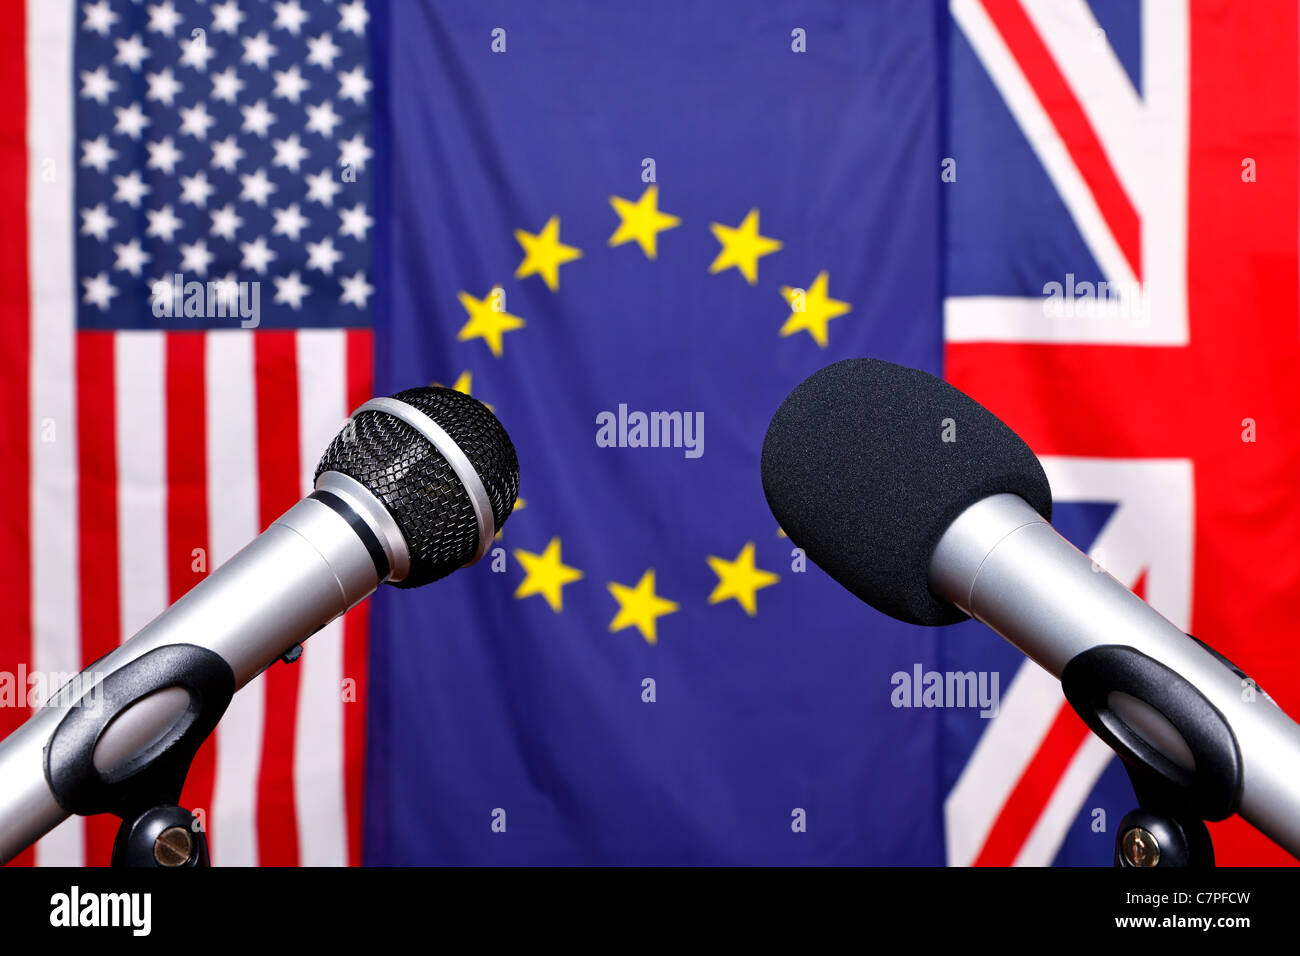 Zwei Mikrofone auf der Bühne eine Pressekonferenz mit den Flaggen aus Amerika, Europäische Union und dem Vereinigten Königreich Stockfoto